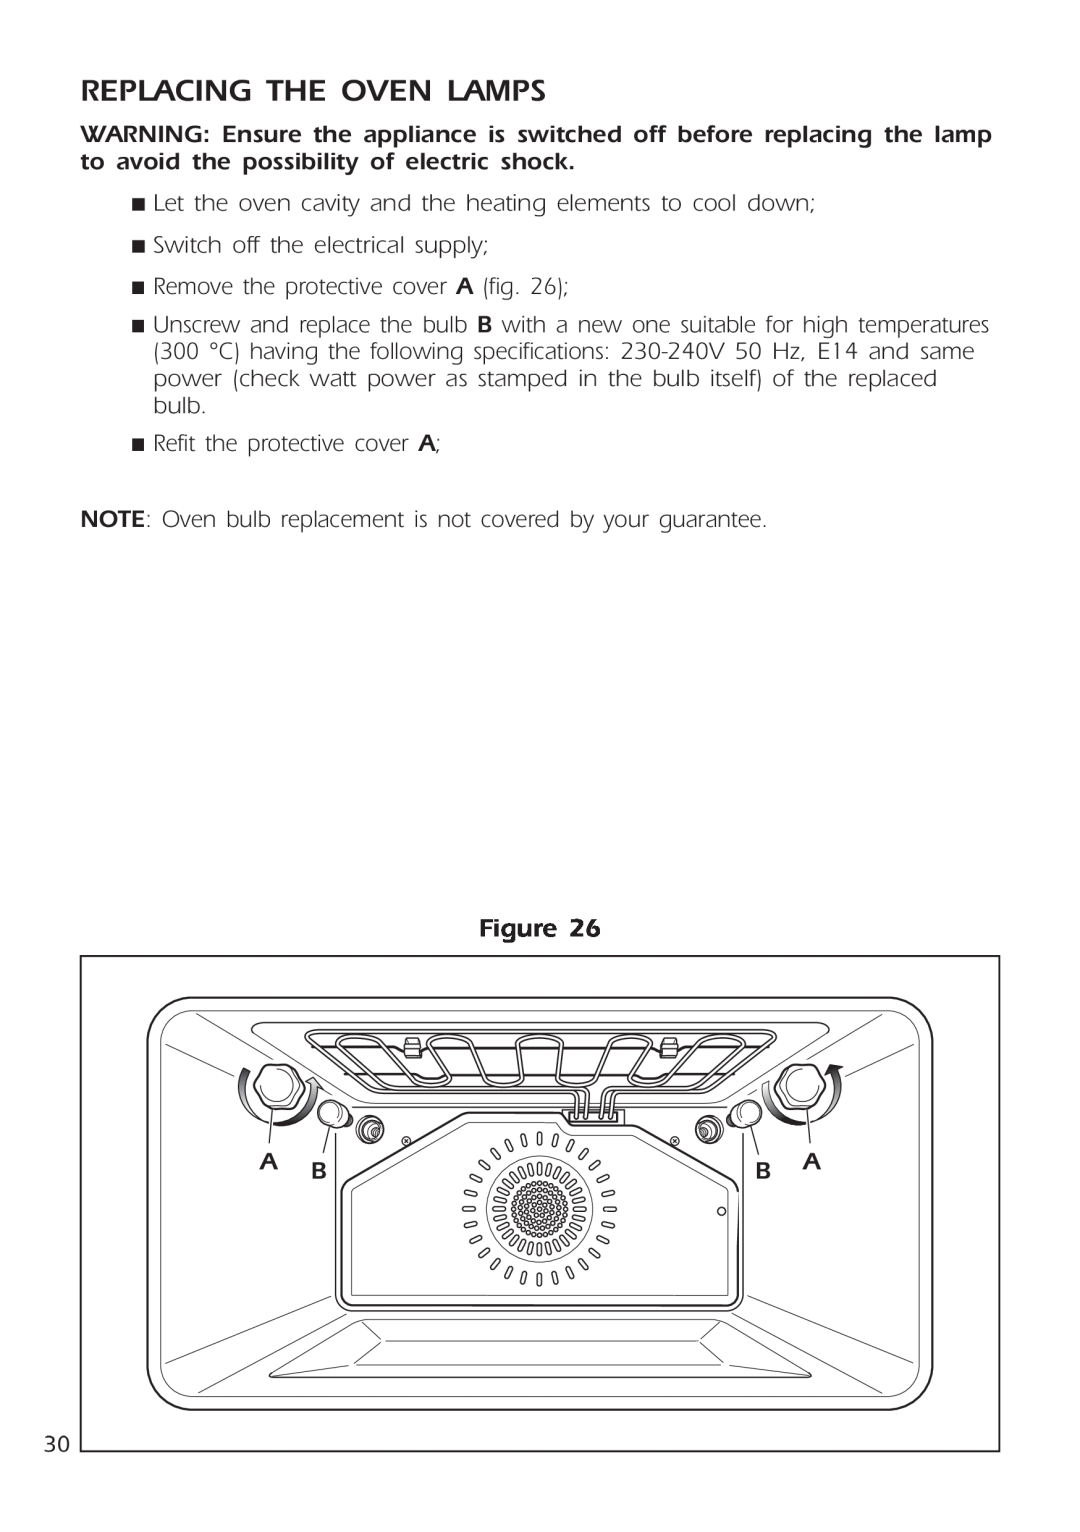 DeLonghi DE 91 MPS manual Replacing The Oven Lamps 